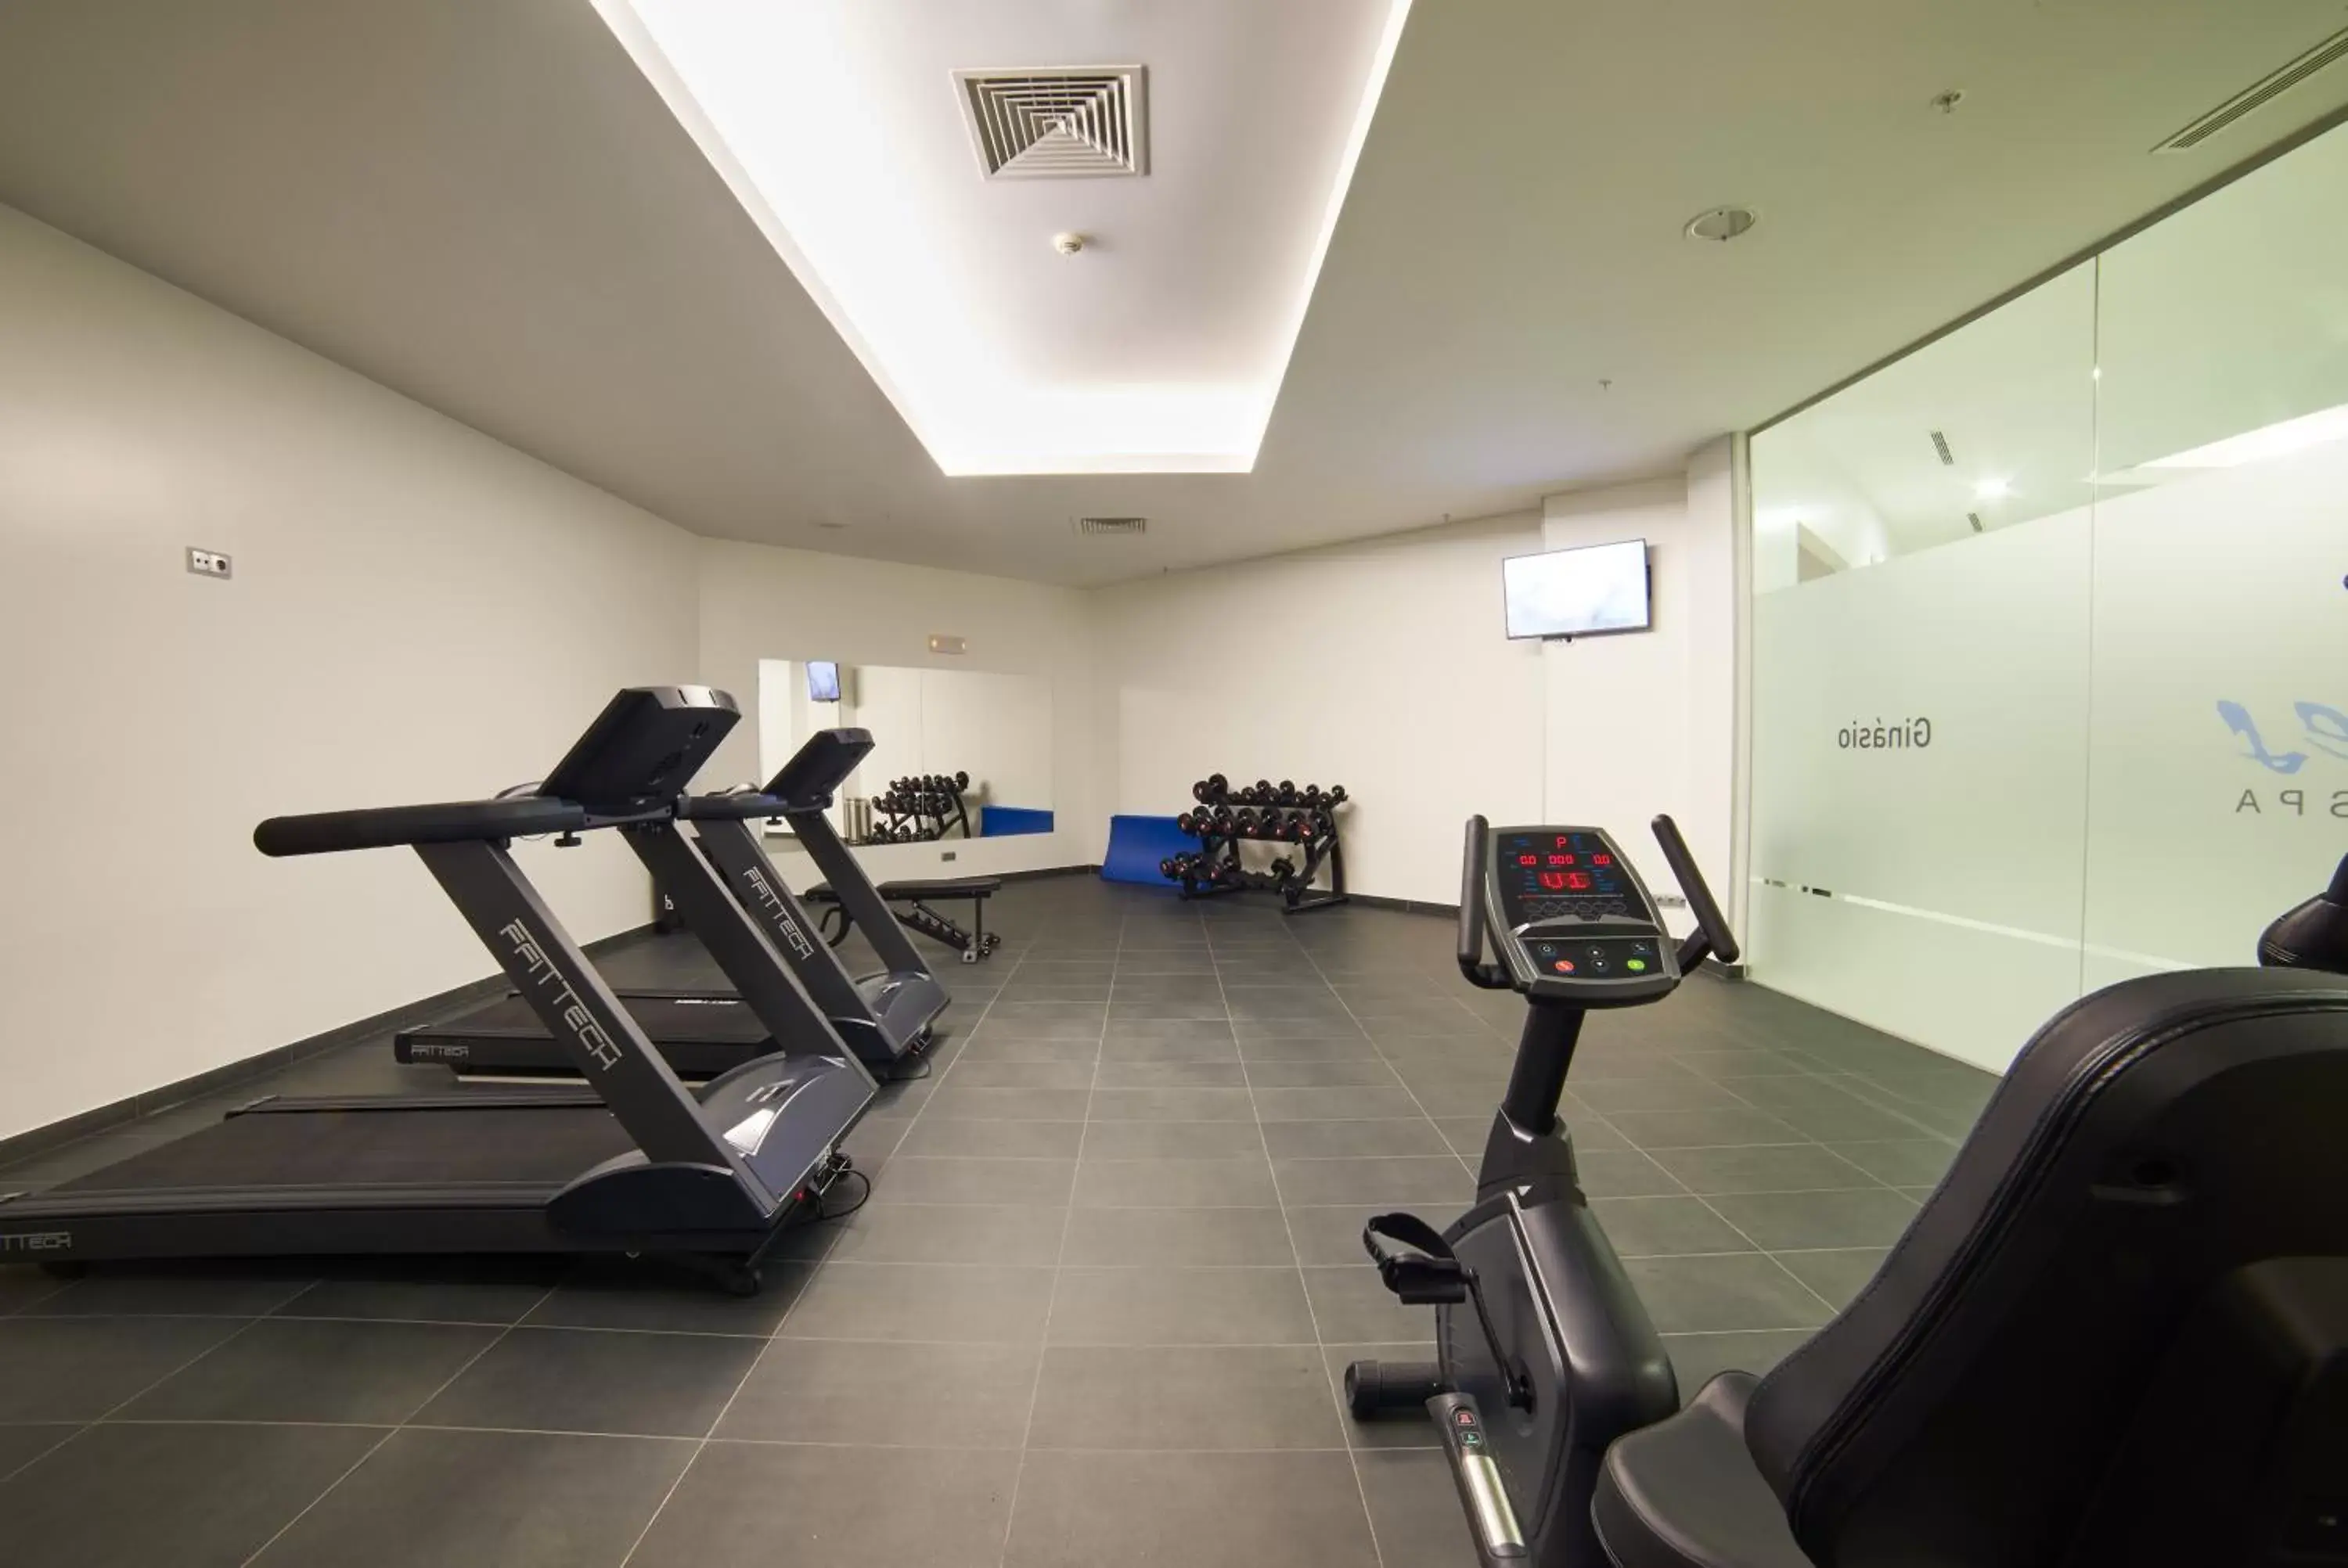 Fitness centre/facilities, Fitness Center/Facilities in RR Alvor Baía Resort